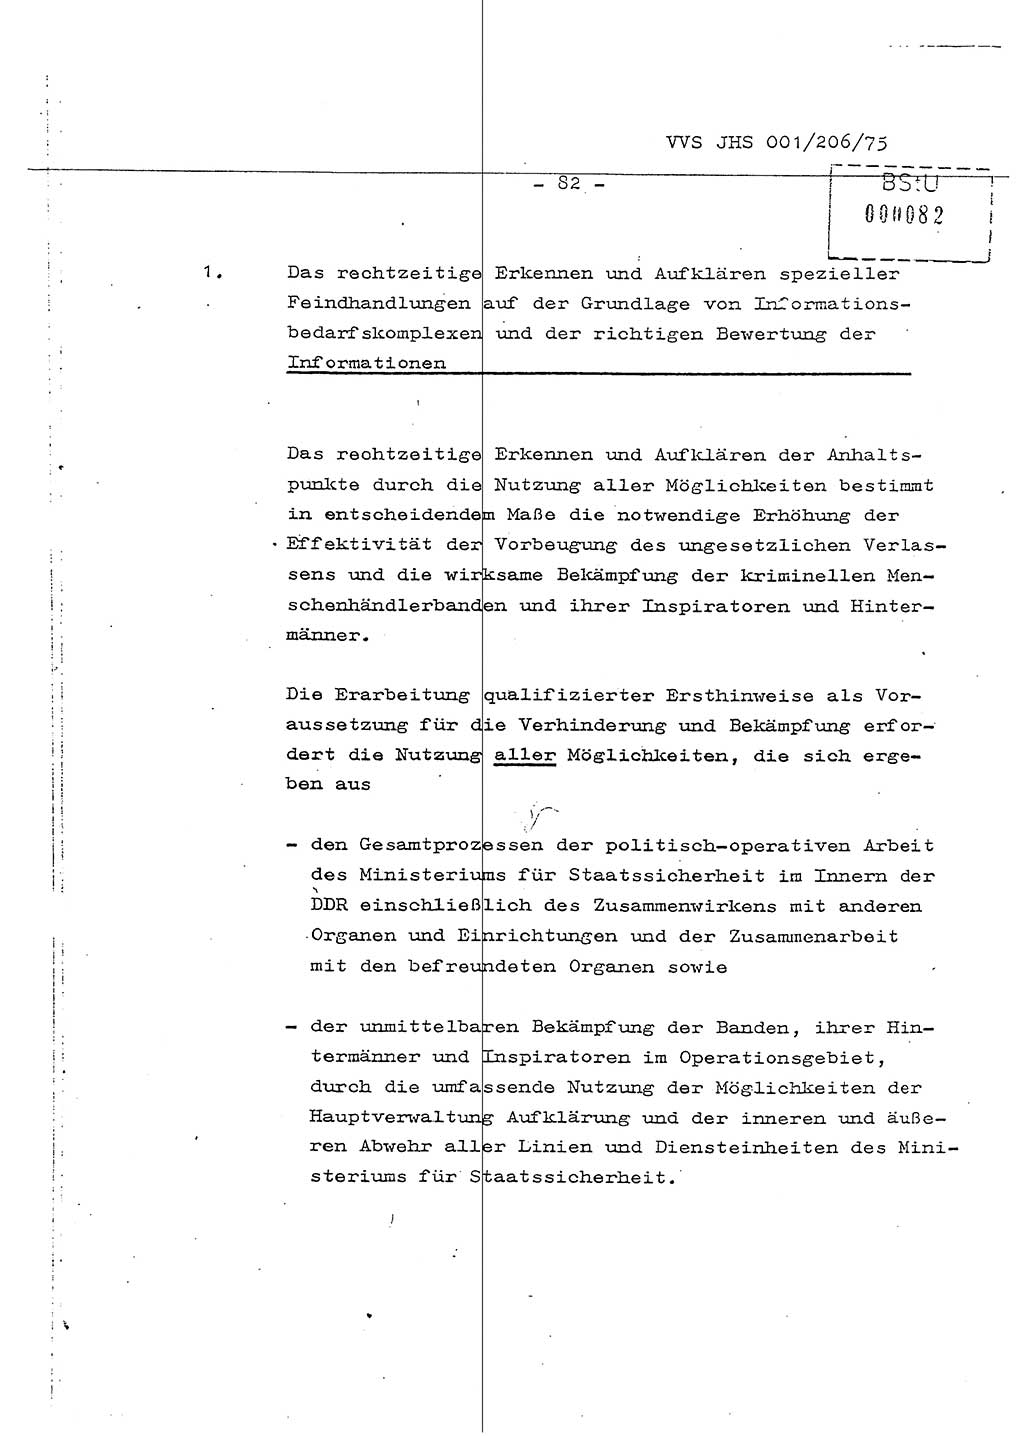 Dissertation Generalmajor Manfred Hummitzsch (Leiter der BV Leipzig), Generalmajor Heinz Fiedler (HA Ⅵ), Oberst Rolf Fister (HA Ⅸ), Ministerium für Staatssicherheit (MfS) [Deutsche Demokratische Republik (DDR)], Juristische Hochschule (JHS), Vertrauliche Verschlußsache (VVS) 001-206/75, Potsdam 1975, Seite 82 (Diss. MfS DDR JHS VVS 001-206/75 1975, S. 82)